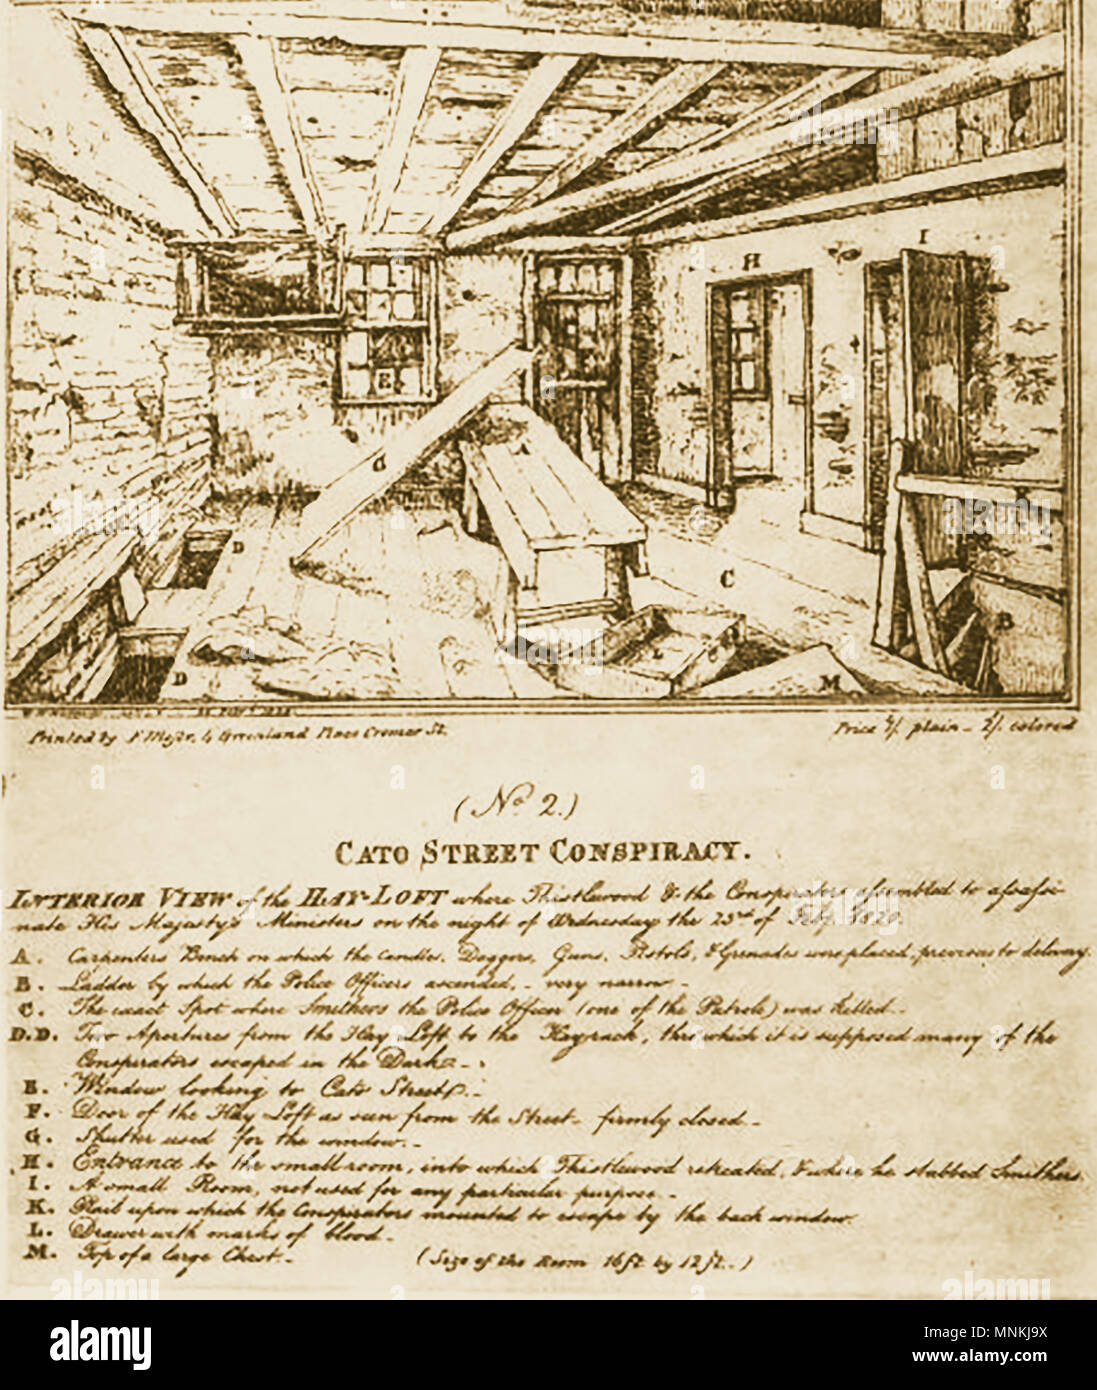 Cato Street Verschwörung/Grundstück (einem britischen Versuch, Mord alle britischen Minister und Ministerpräsidenten im Jahr 1820 - den Heuboden, wo Sitzungen stattgefunden hat Stockfoto